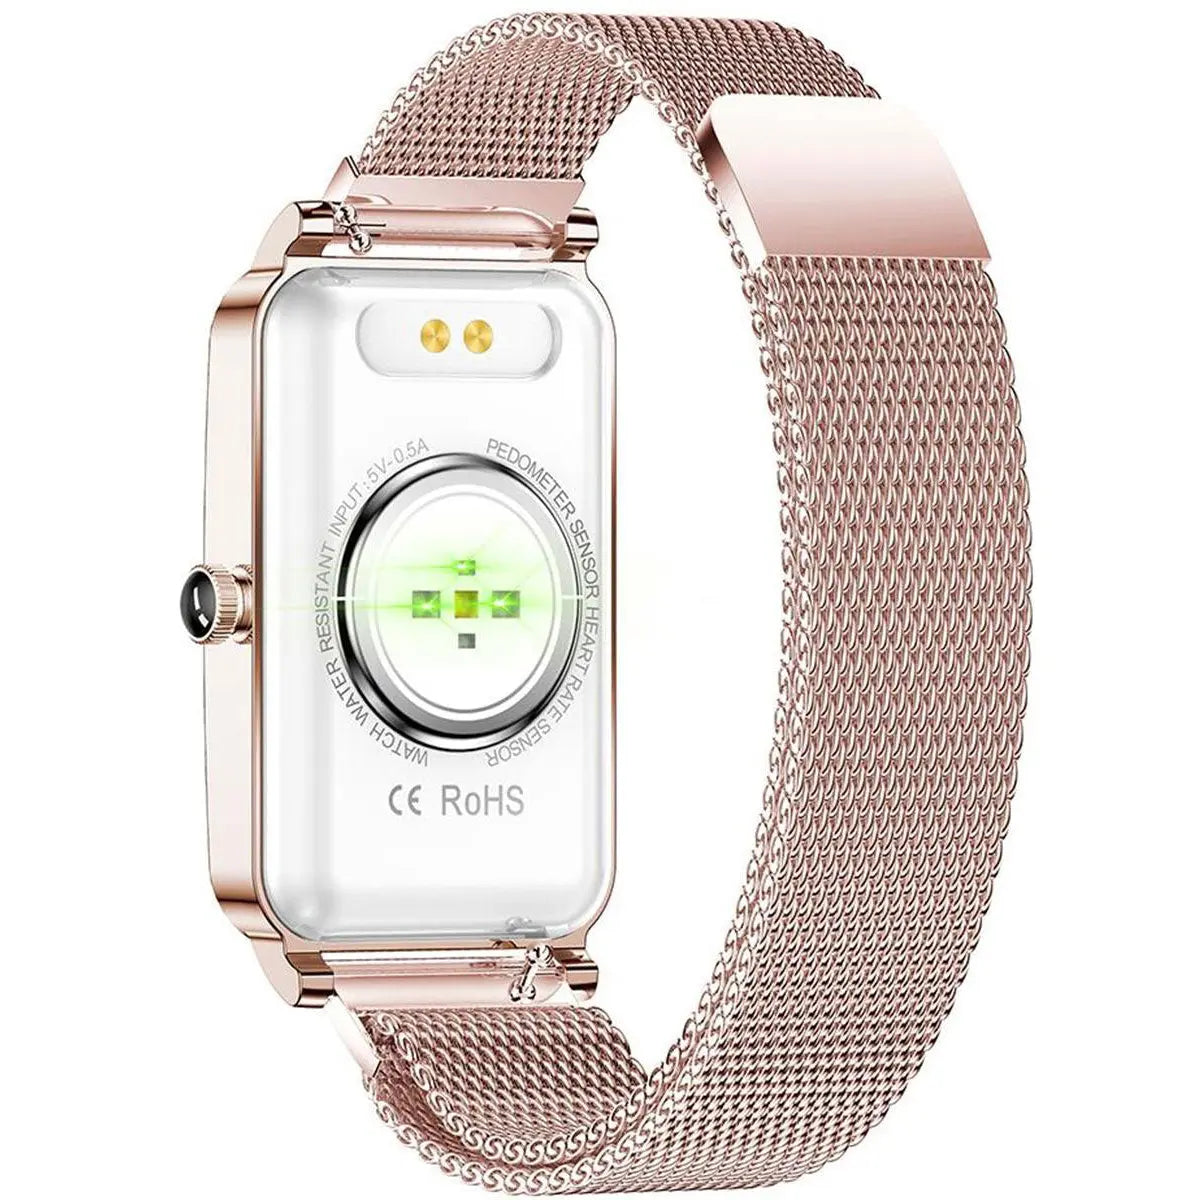 Reloj Inteligente Smart watch Fralugio Zx19 Dorado Notificaciones de Redes Sociales